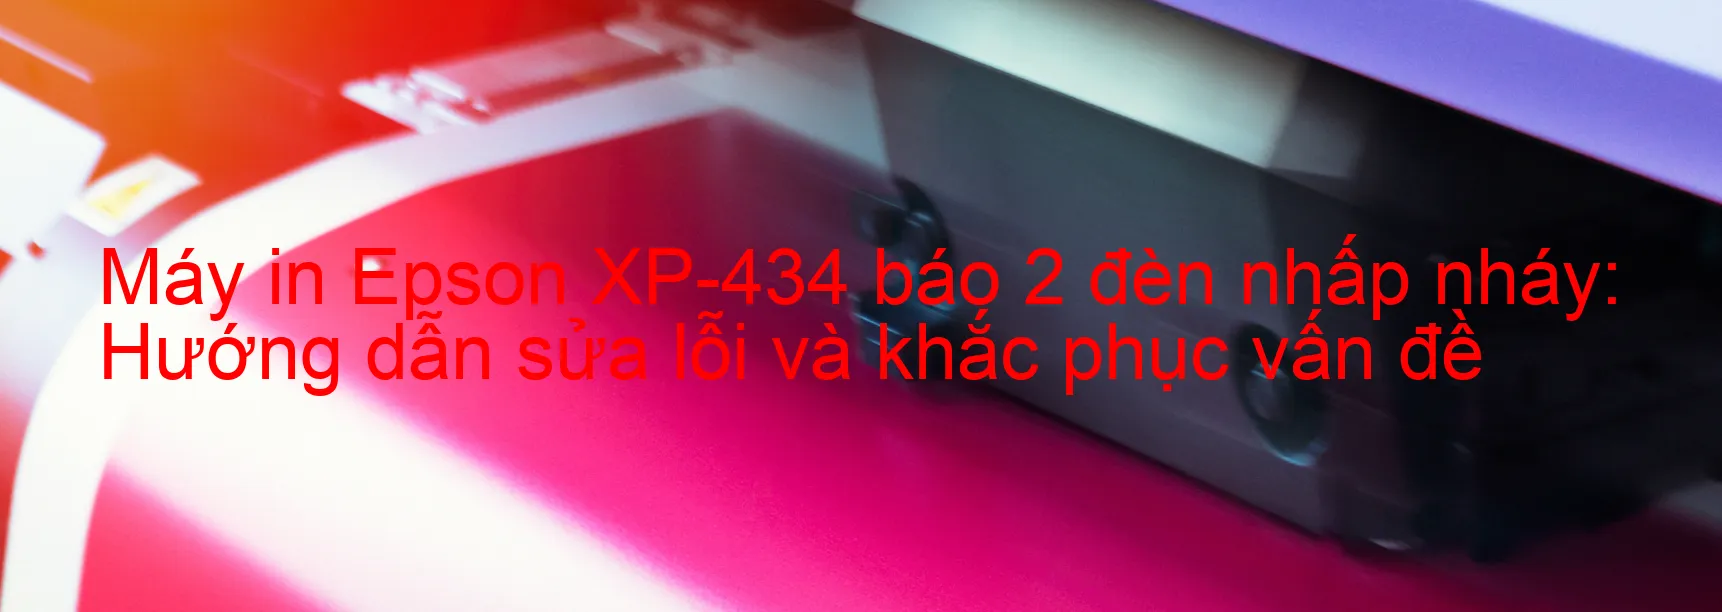 Máy in Epson XP-434 báo 2 đèn nhấp nháy: Hướng dẫn sửa lỗi và khắc phục vấn đề